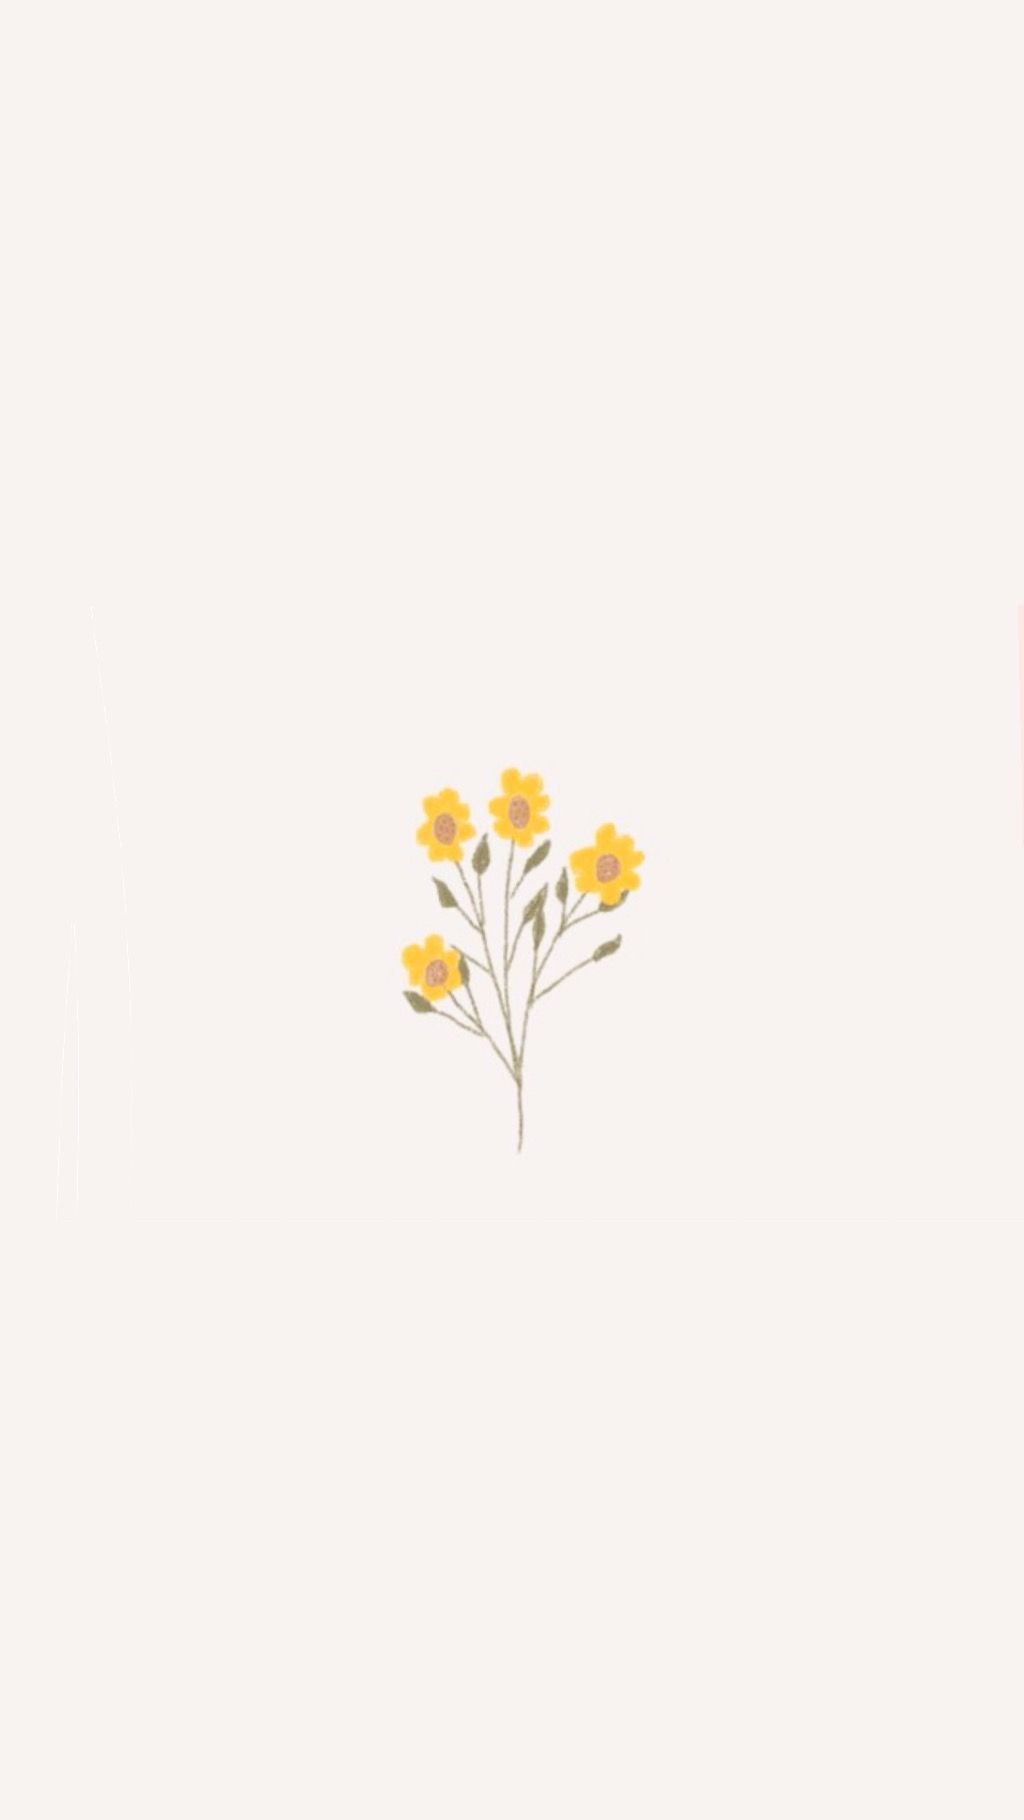 simple flower wallpapers hd